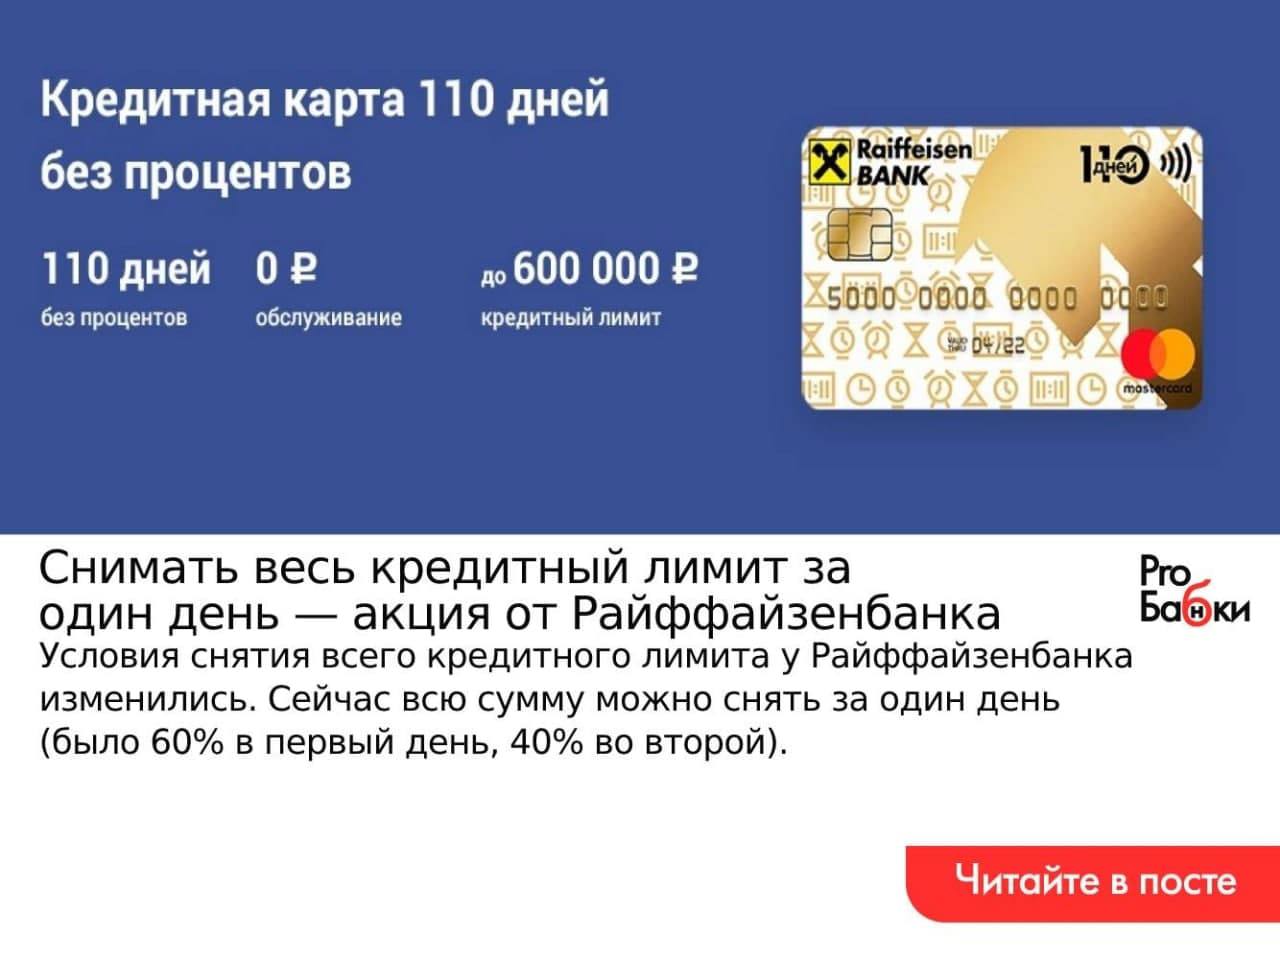 Кредитный лимит. Карты Райффайзенбанк в Грузии для россиян. 110 без процентов